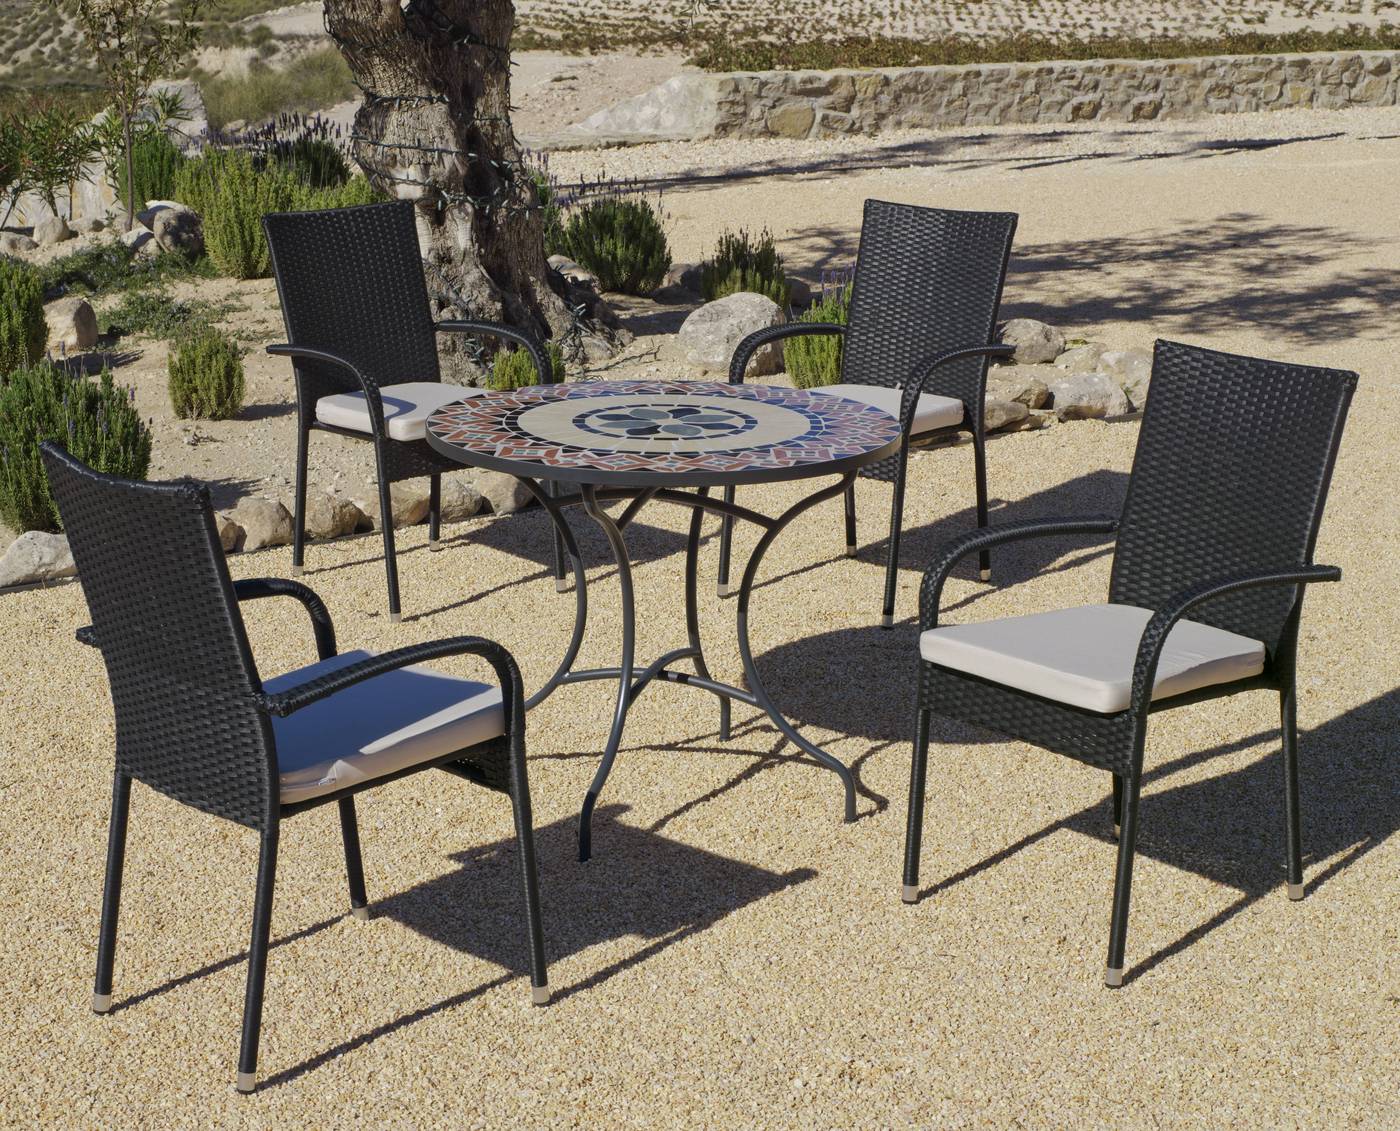 Conjunto para jardín color gris antracita: 1 mesa redonda 90 cm. de forja con panel mosaico + 4 sillones de ratán sintético